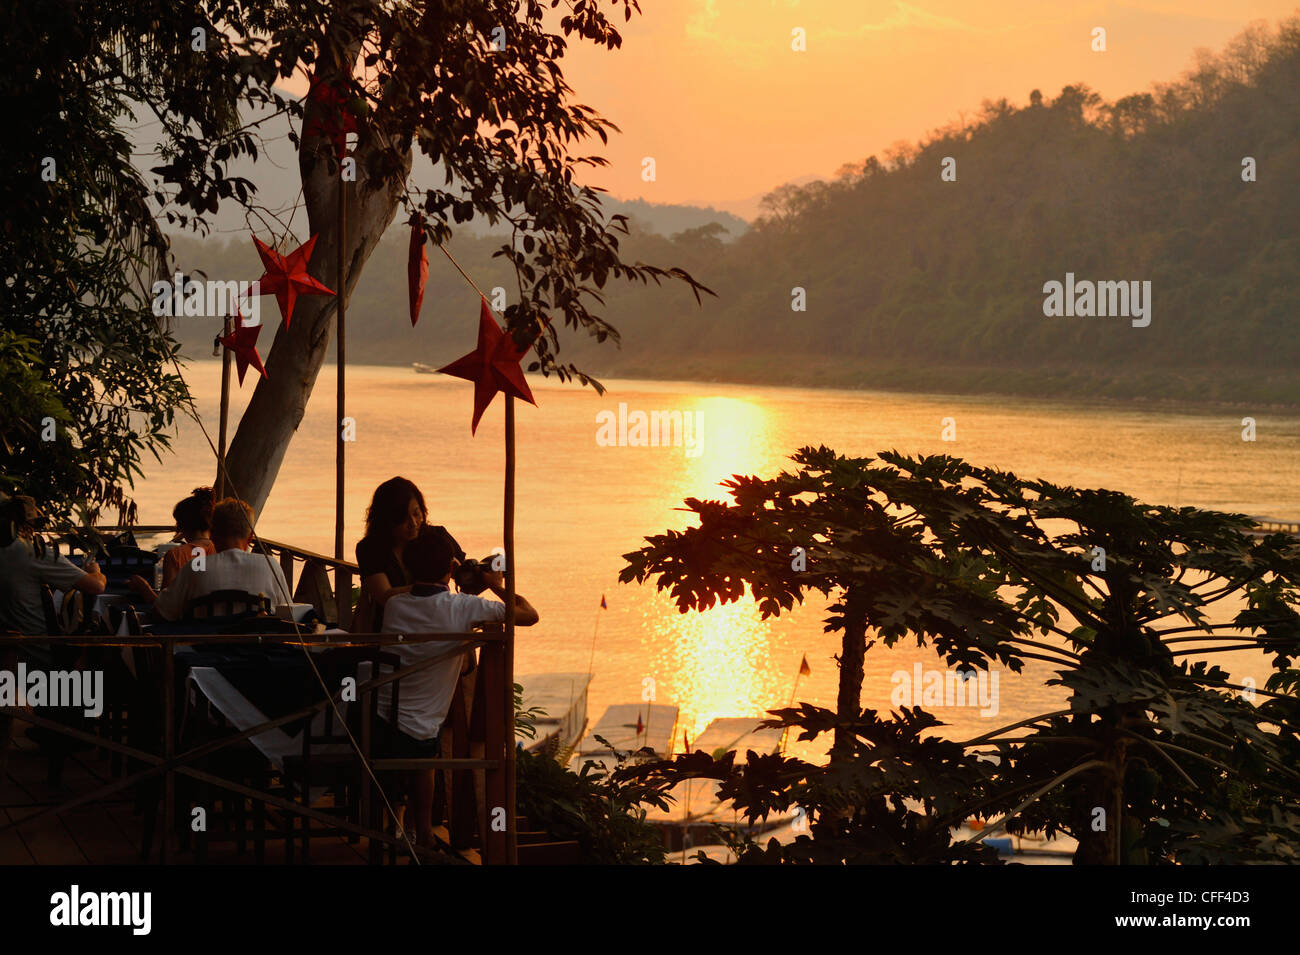 Restaurant overlooking Mekong river after sunset, Luang Prabang, Laos Stock Photo